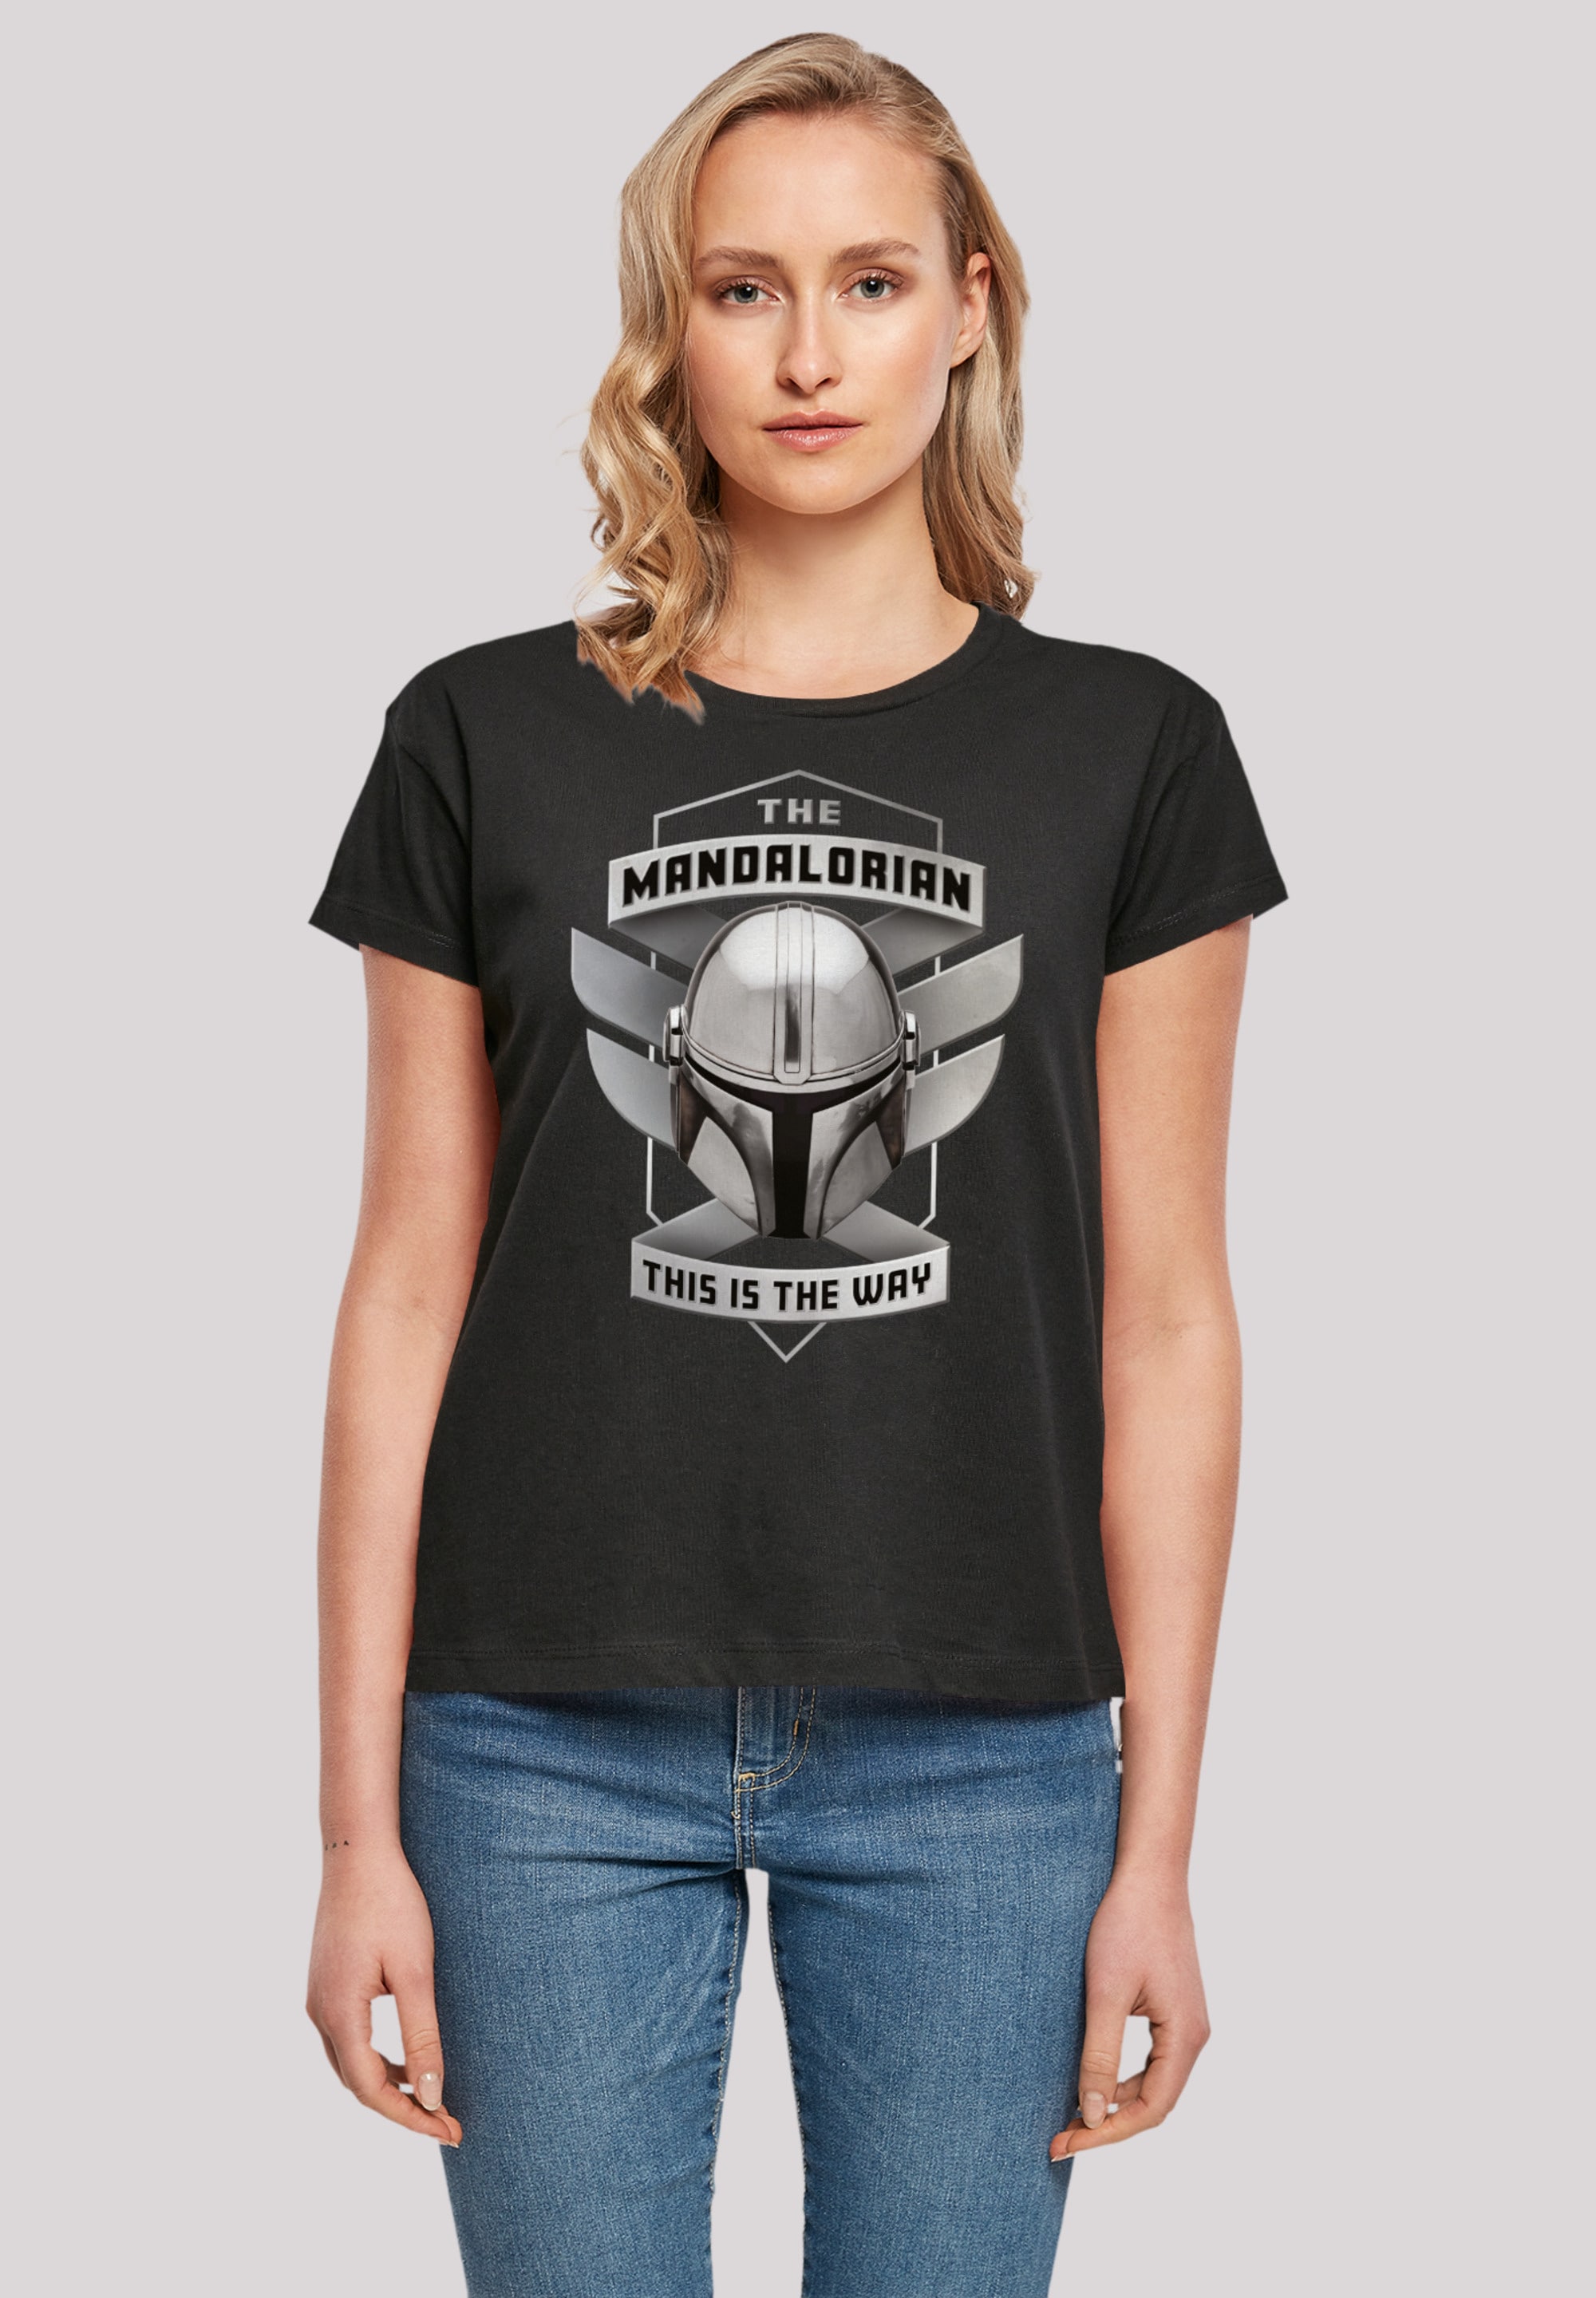 F4NT4STIC T-Shirt BAUR Qualität Mandalorian The | Is kaufen Premium This The für »Star Wars Way«